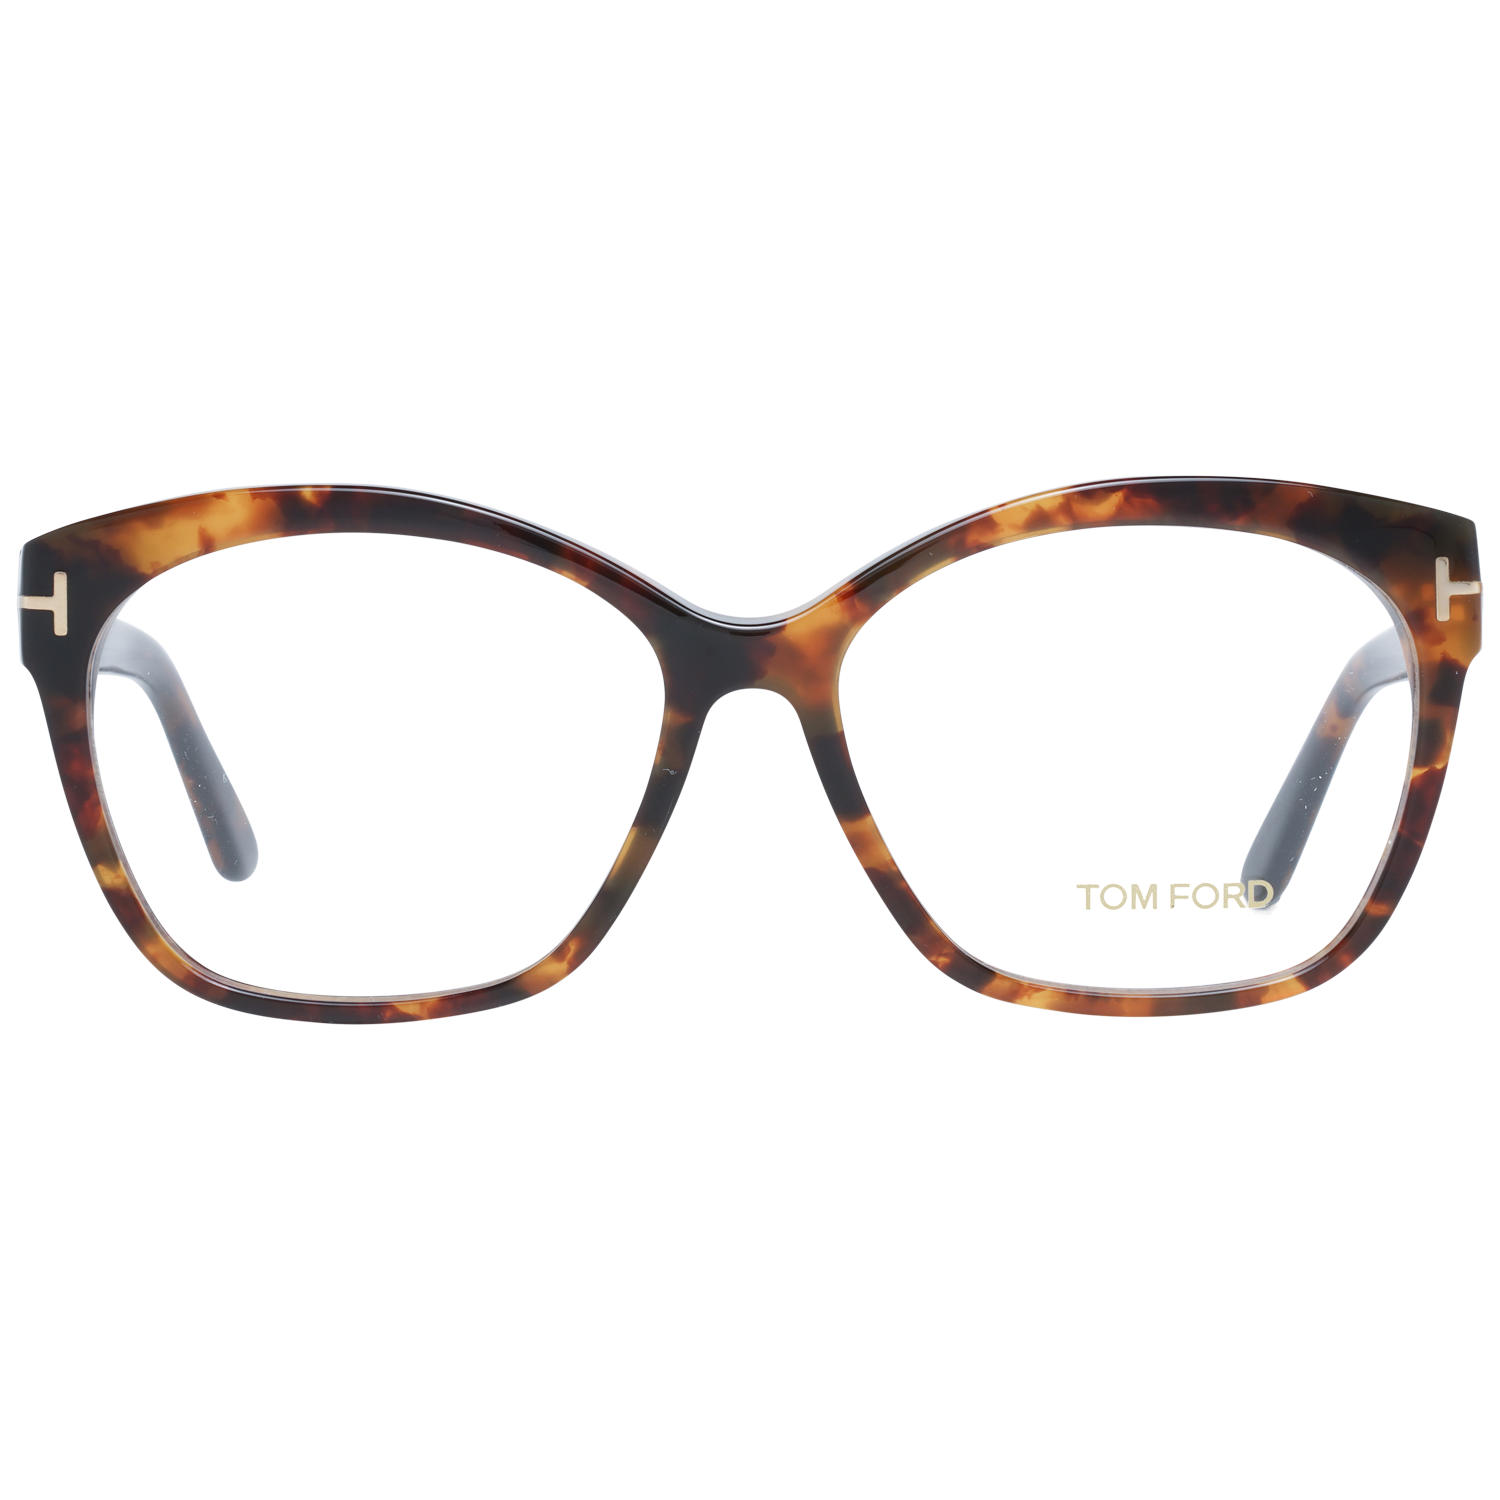 Tom Ford Eyeglasses Tom Ford Optical Frame FT5435 056 57 Eyeglasses Eyewear UK USA Australia 